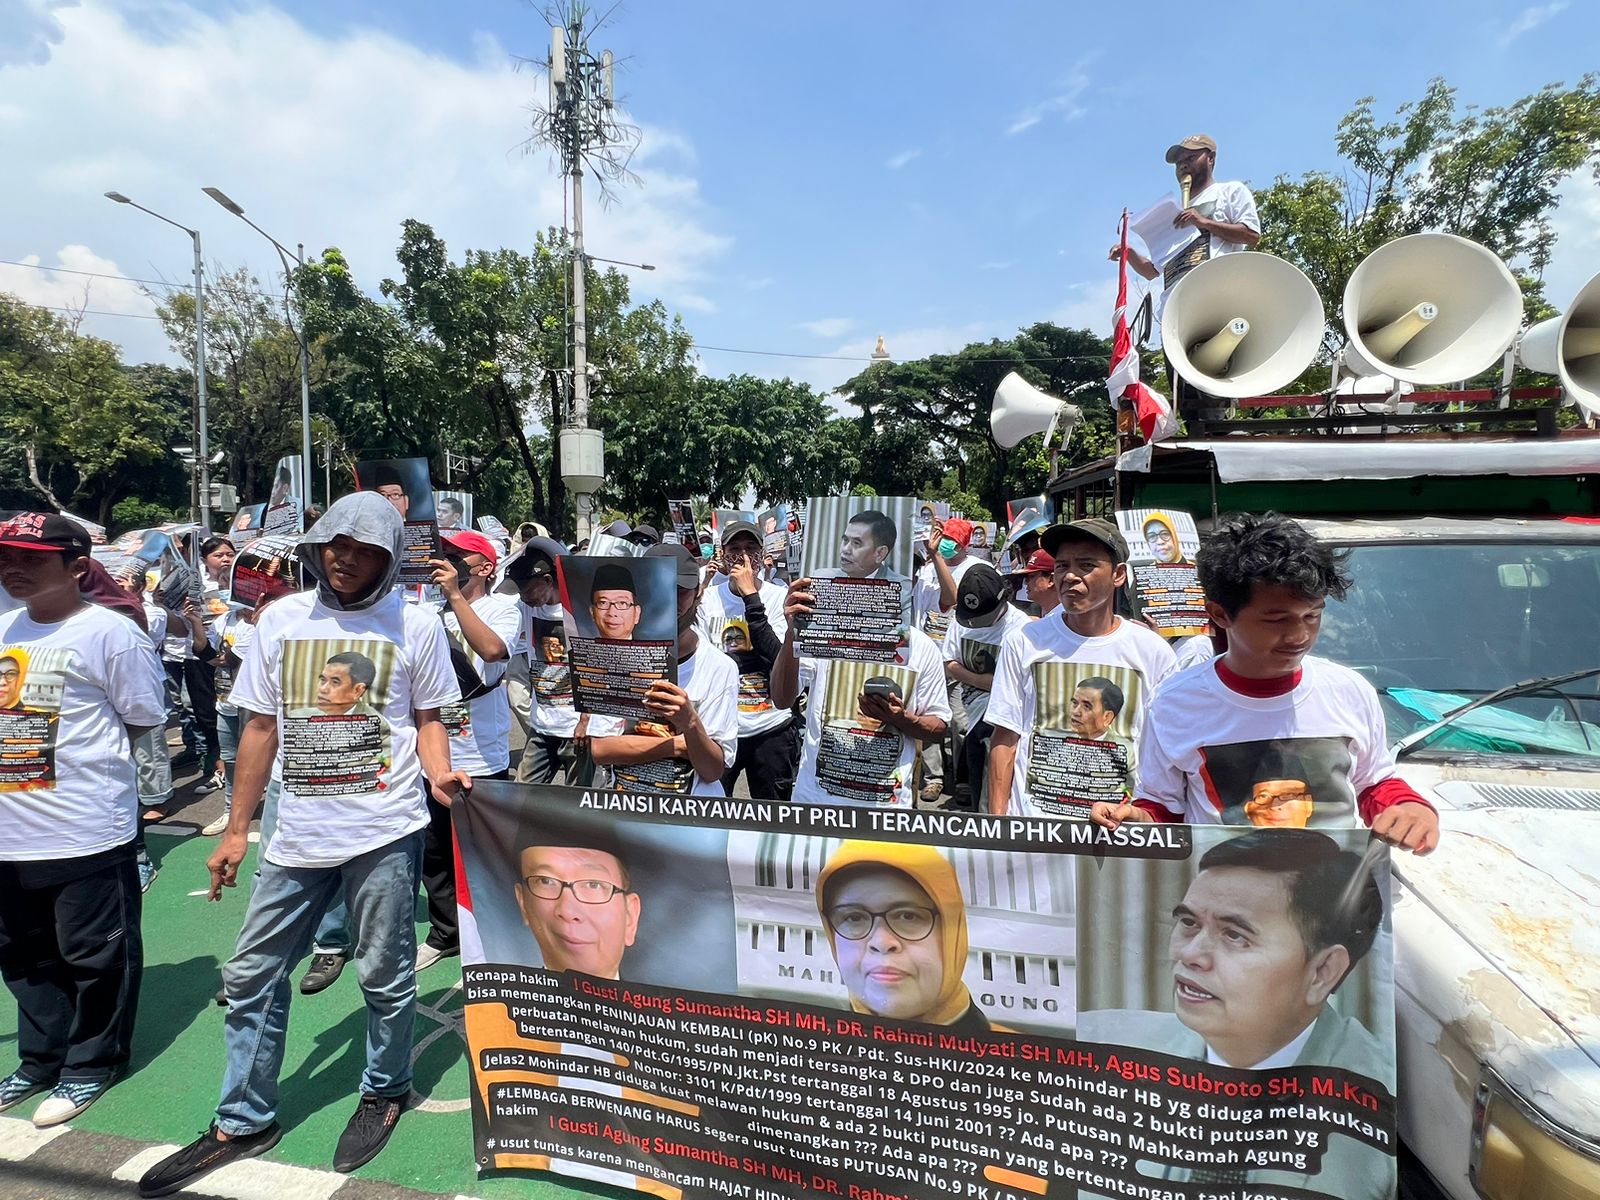 ﻿Terancam PHK Massal Gegara Putusan PK yang Kontroversial, Ratusan Karyawan Polo Kembali Berdemo di MA